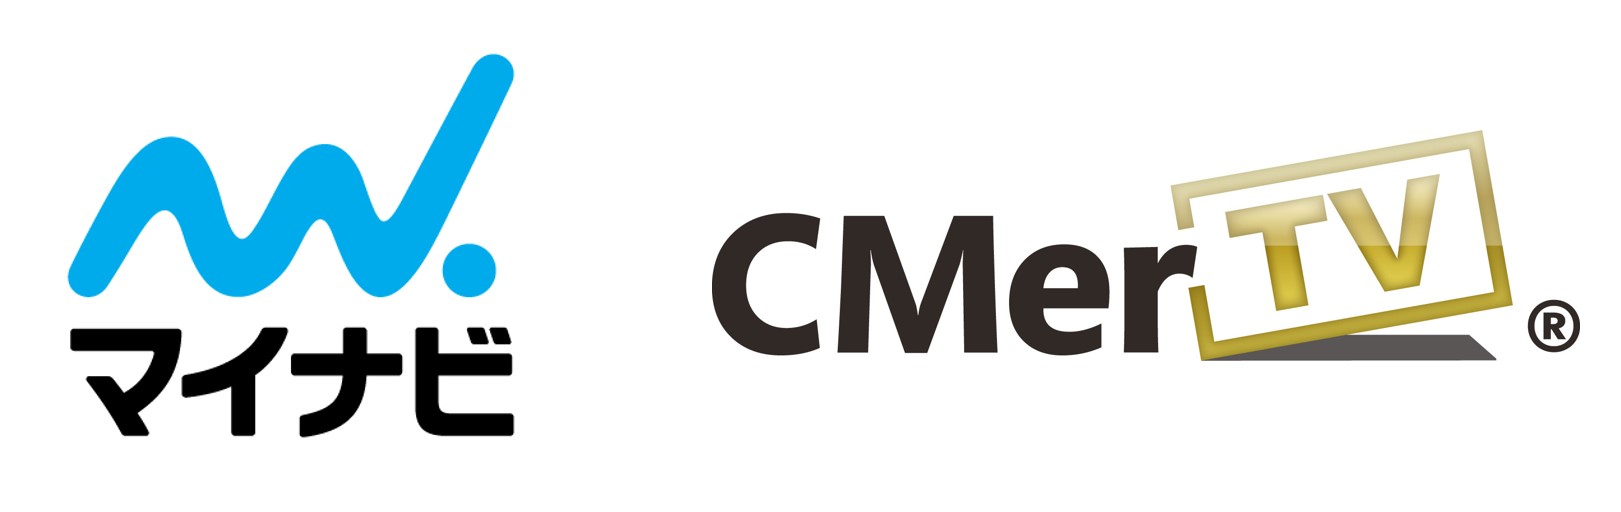 マイナビ 動画cm広告配信プラットフォーム事業を展開する株式会社cmertvへ出資 マイナビのプレスリリース